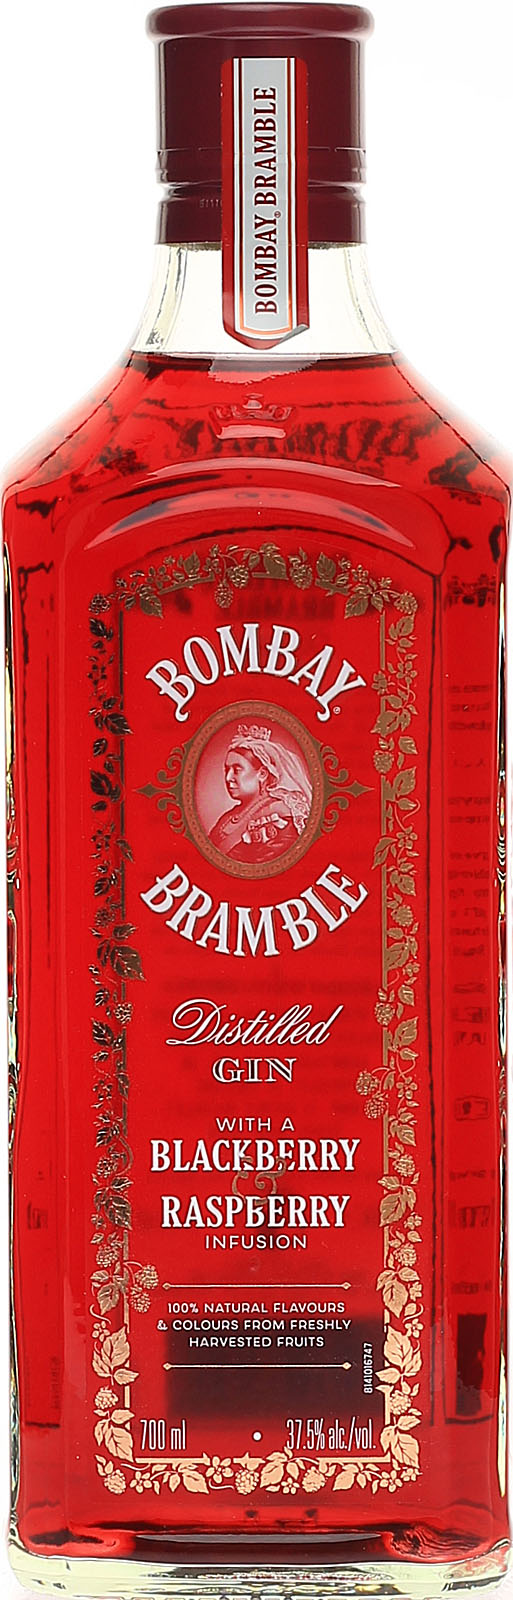 Bombay Bramble Shop uns Ginbei im Distilled